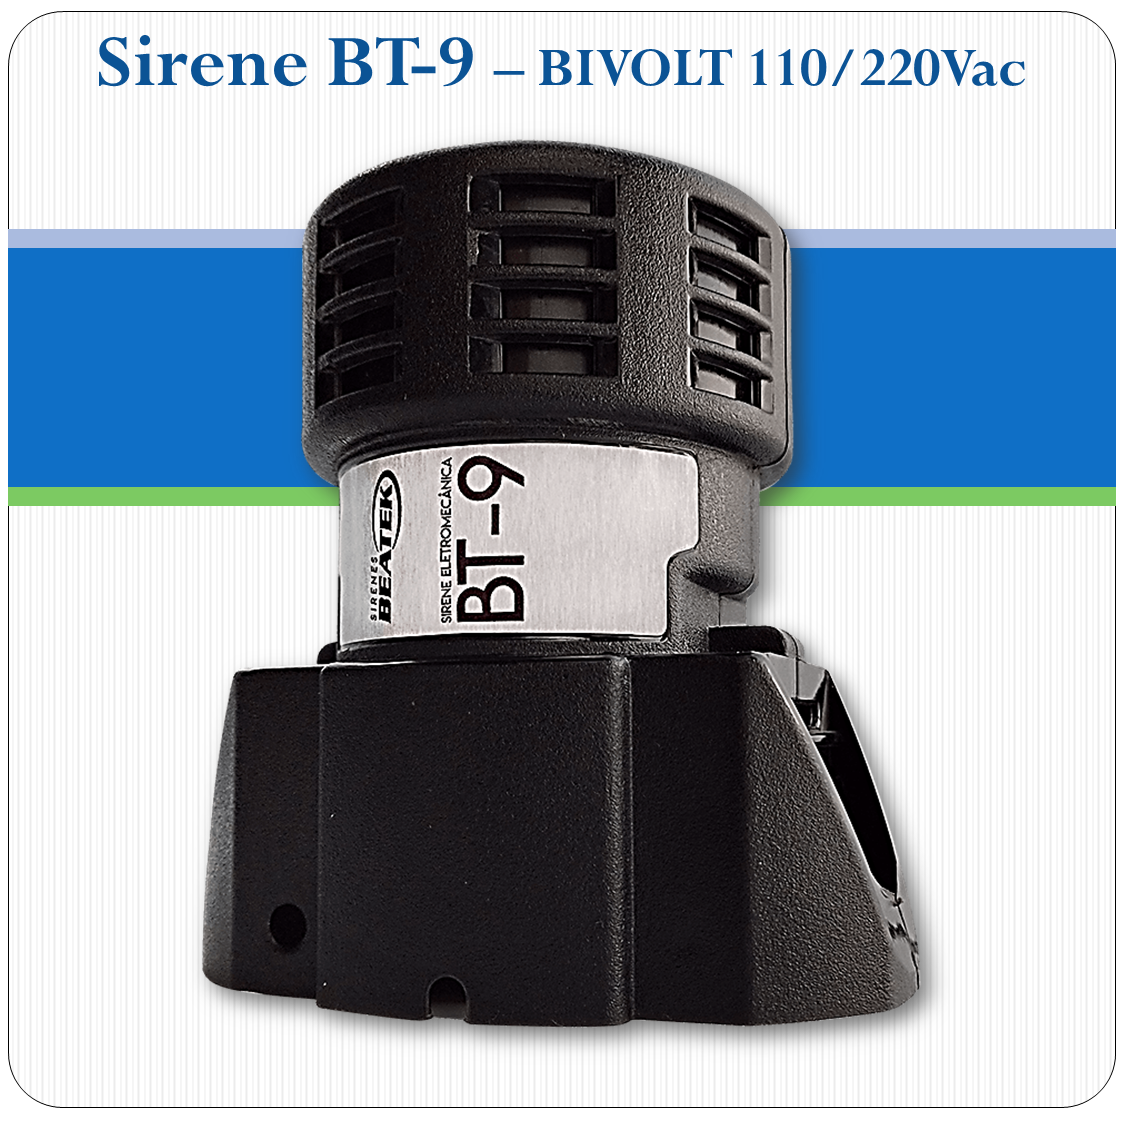 Sirene Eletromecânica BT-9 - 113.8dB